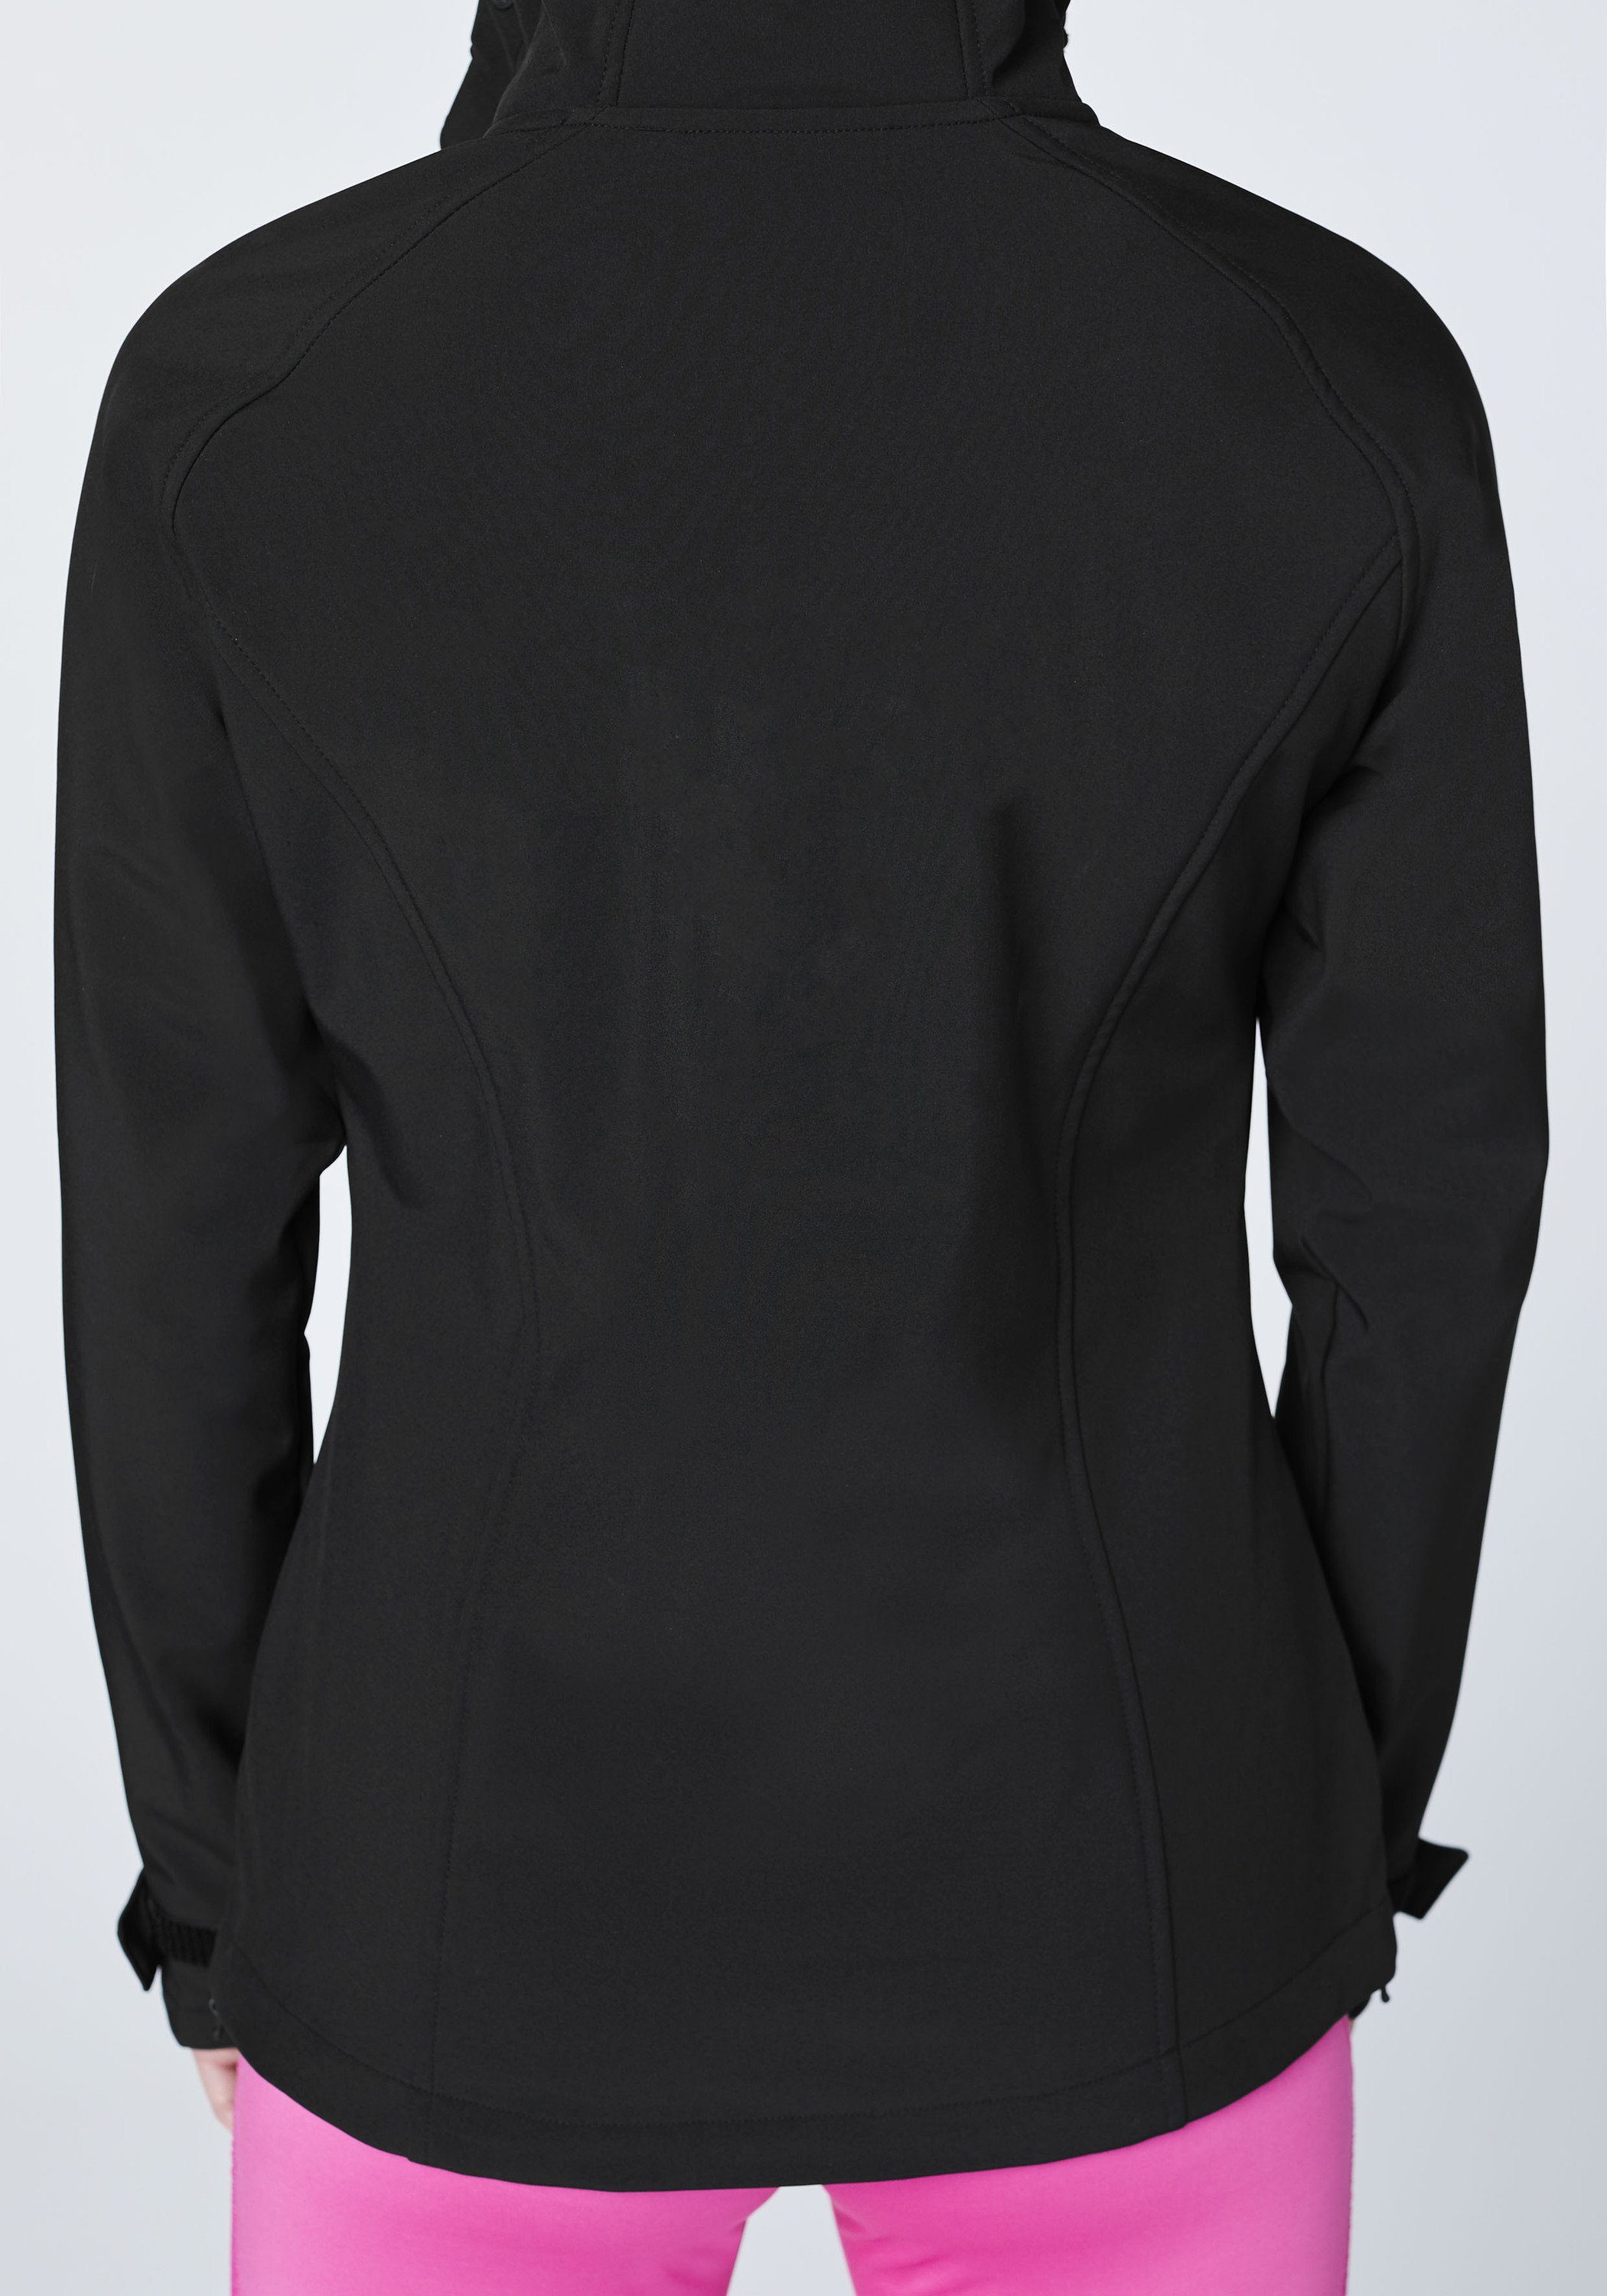 funktionalen schwarz 1 Design Softshelljacke Softshell-Jacke im Chiemsee